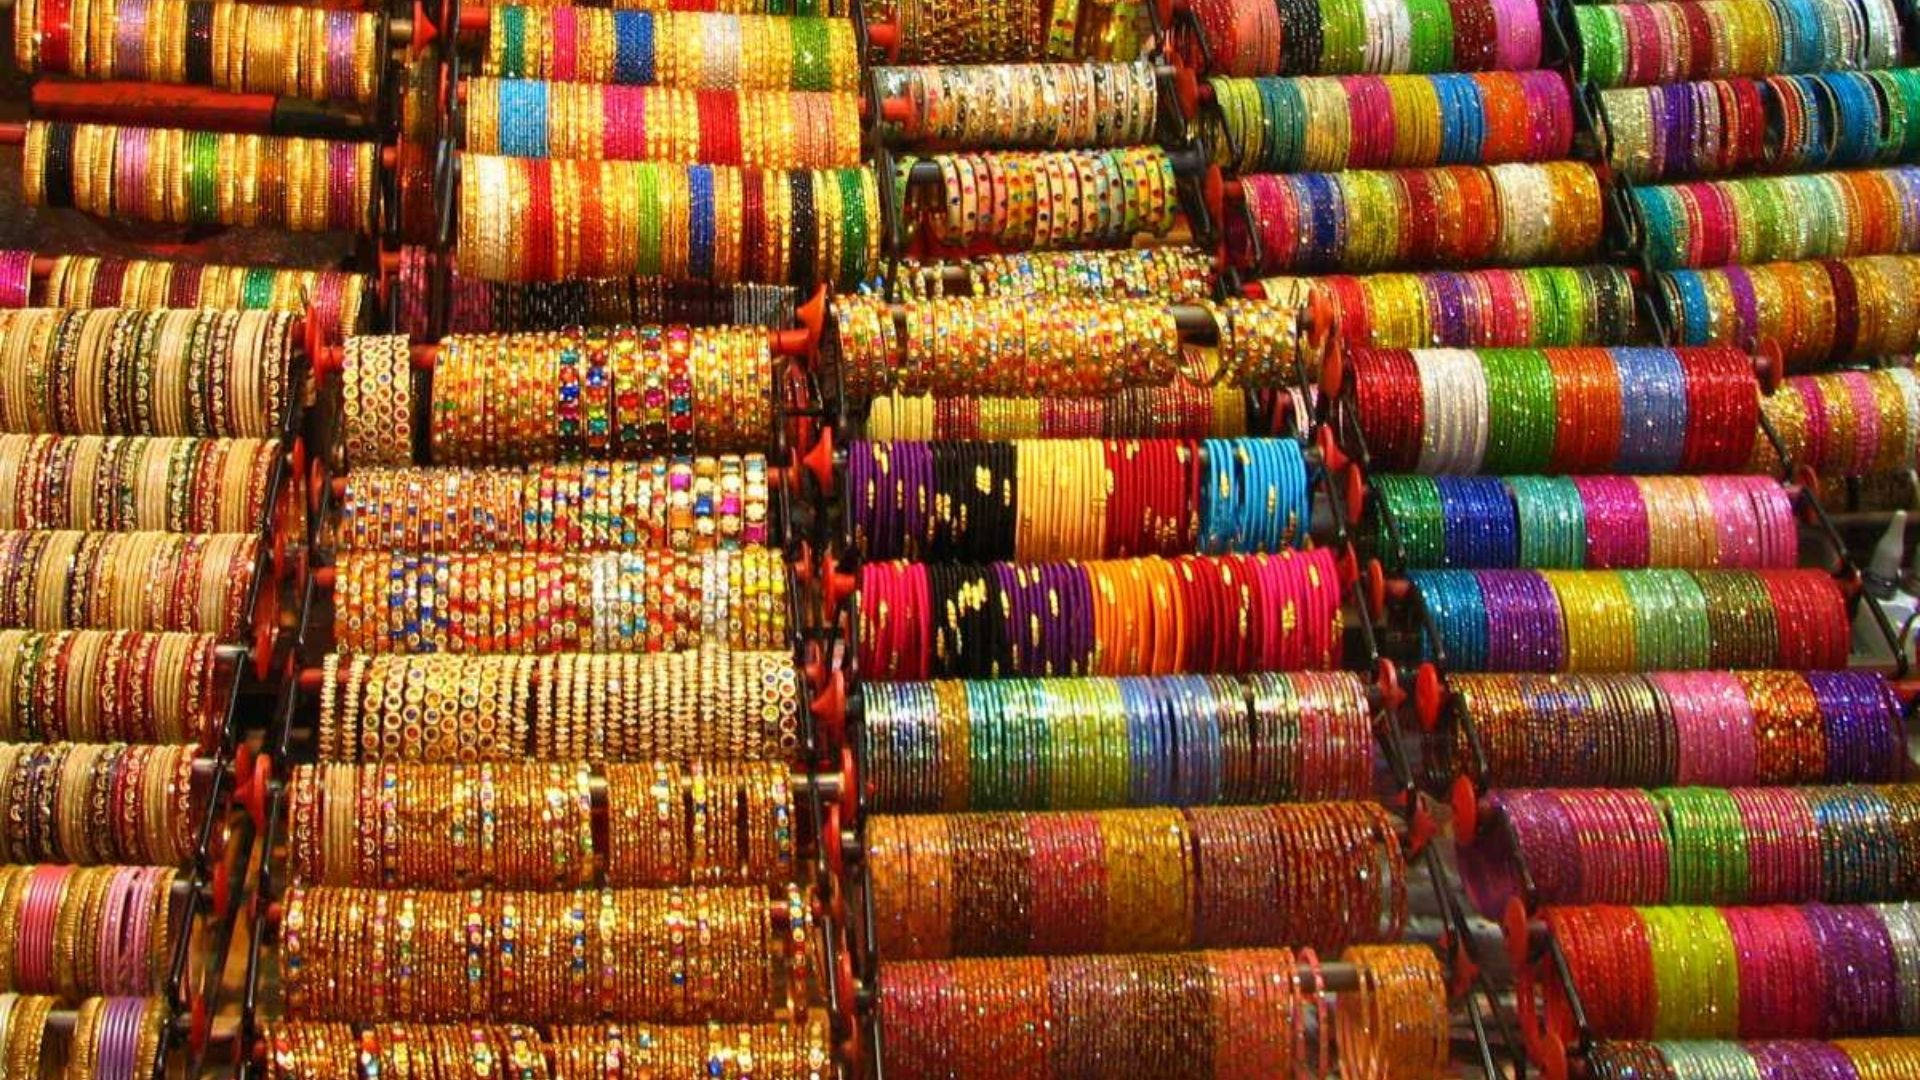 Hyderabad Laad Bazaar